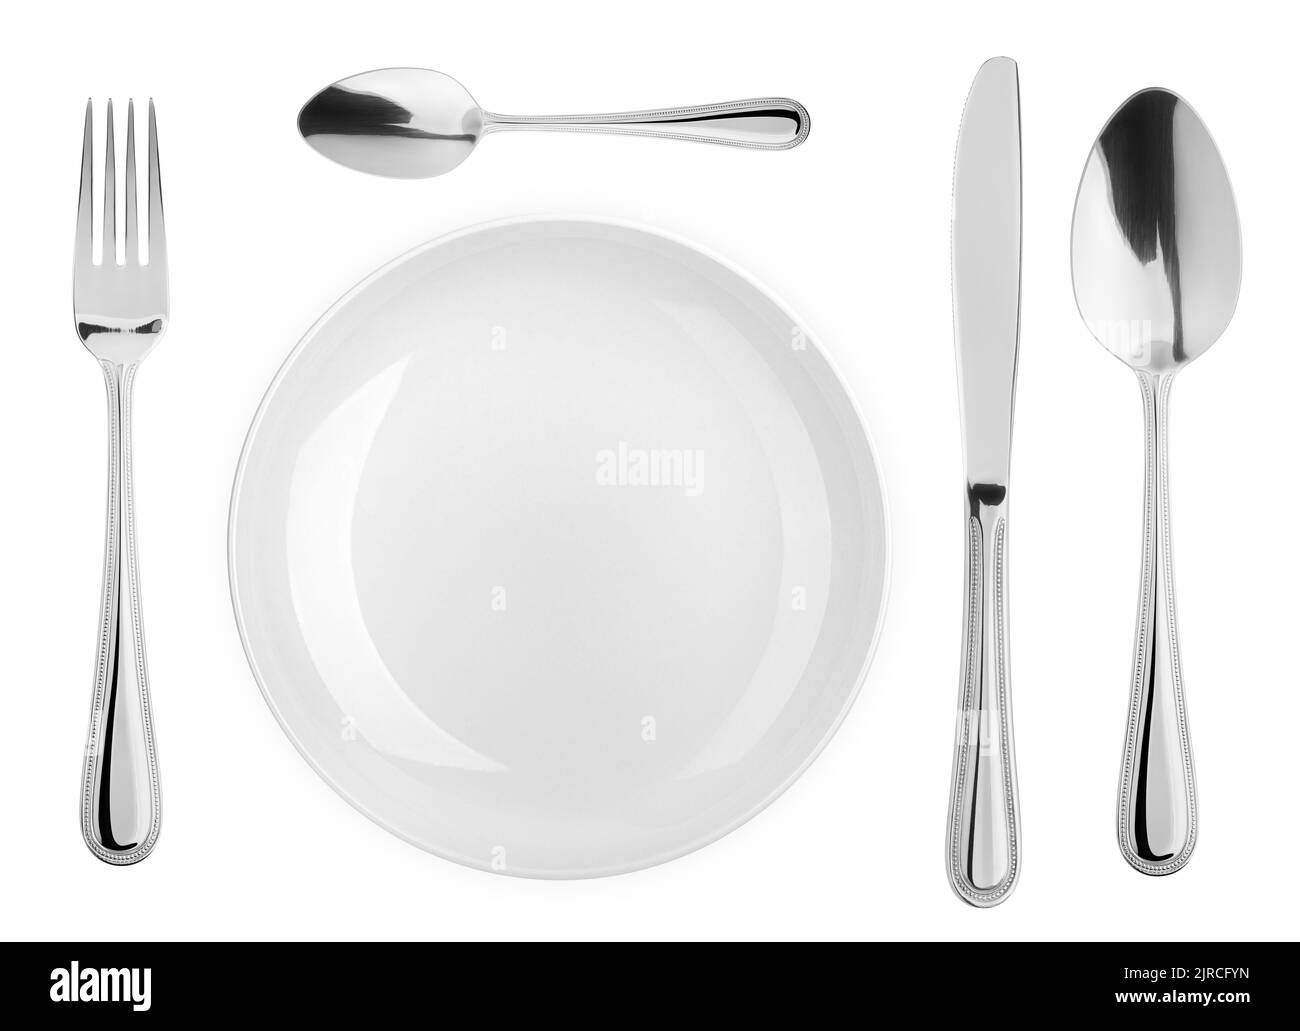 Piatto vuoto, cucchiaio, cucchiaino da tè, forchetta, coltello, posate isolate su sfondo bianco, percorso di ritaglio, vista dall'alto Foto Stock